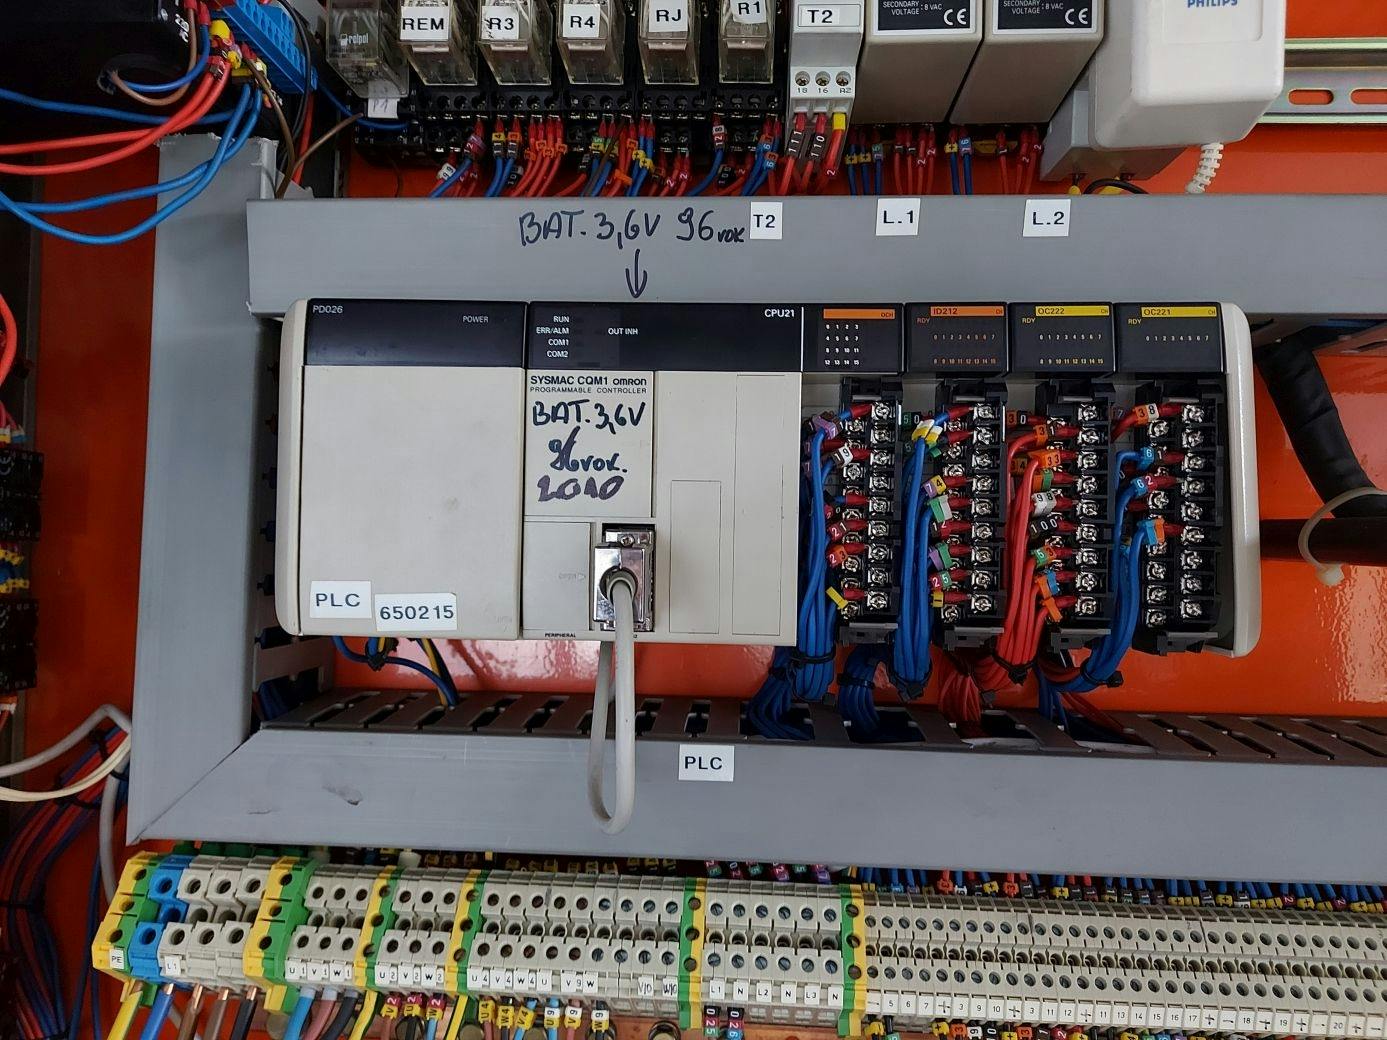 Control unit of Cortelazzi Fintec Arol Triblock VEGA 40-50-10